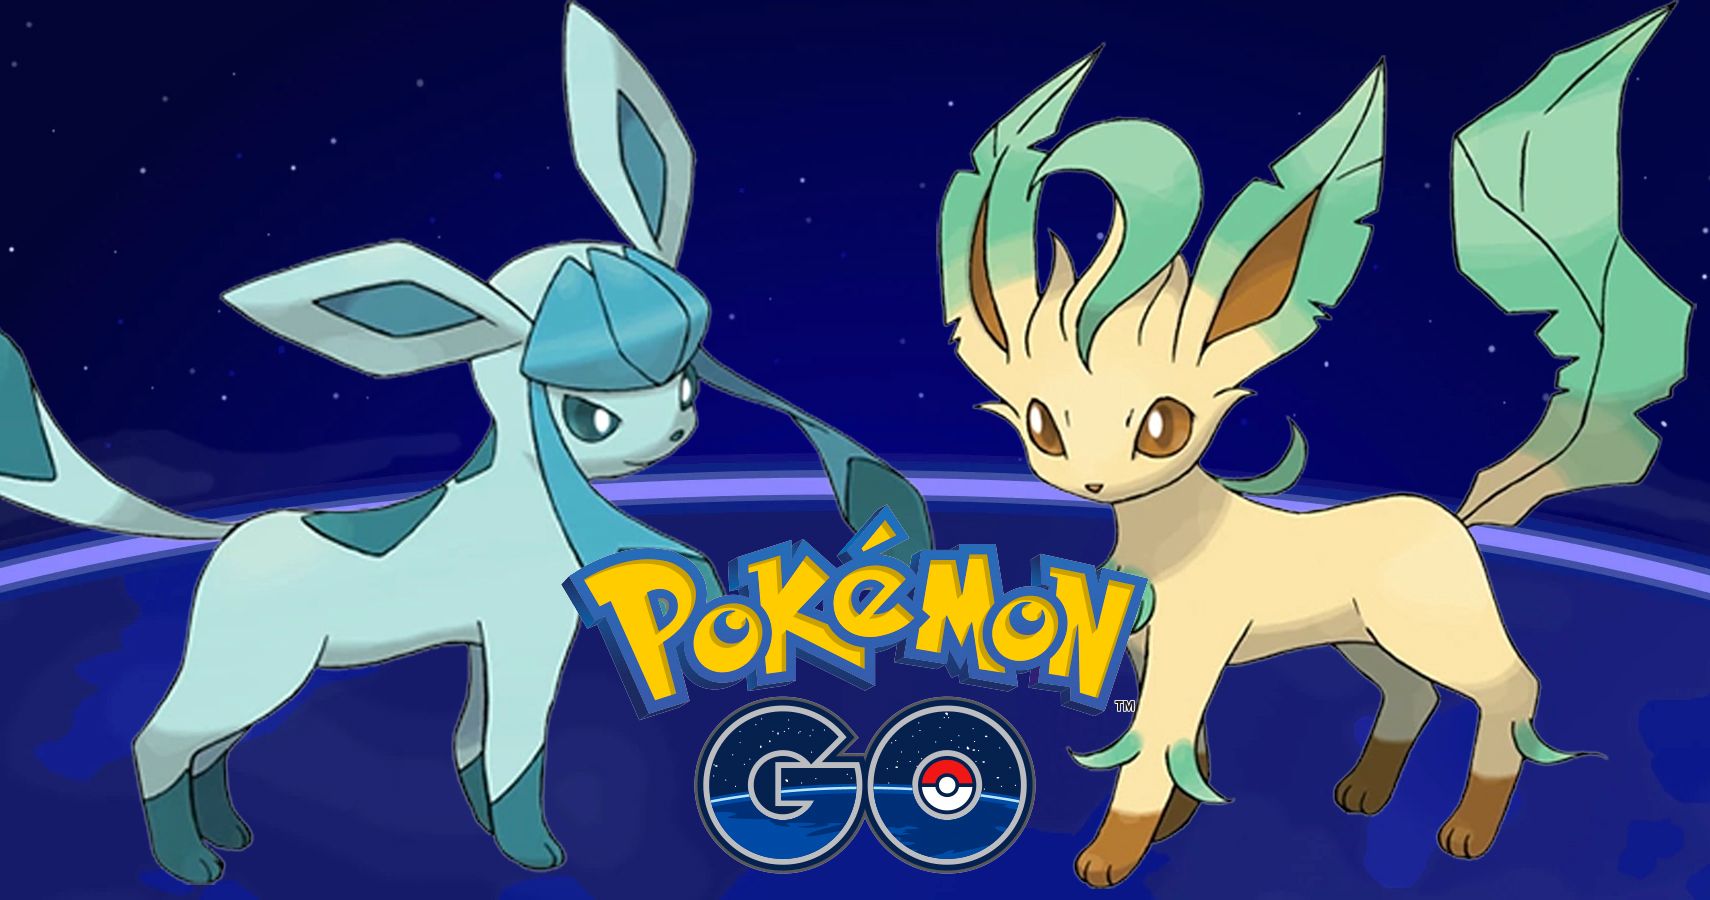 Pokémon GO terá Leafeon, Glaceon e novos lures, indica datamining